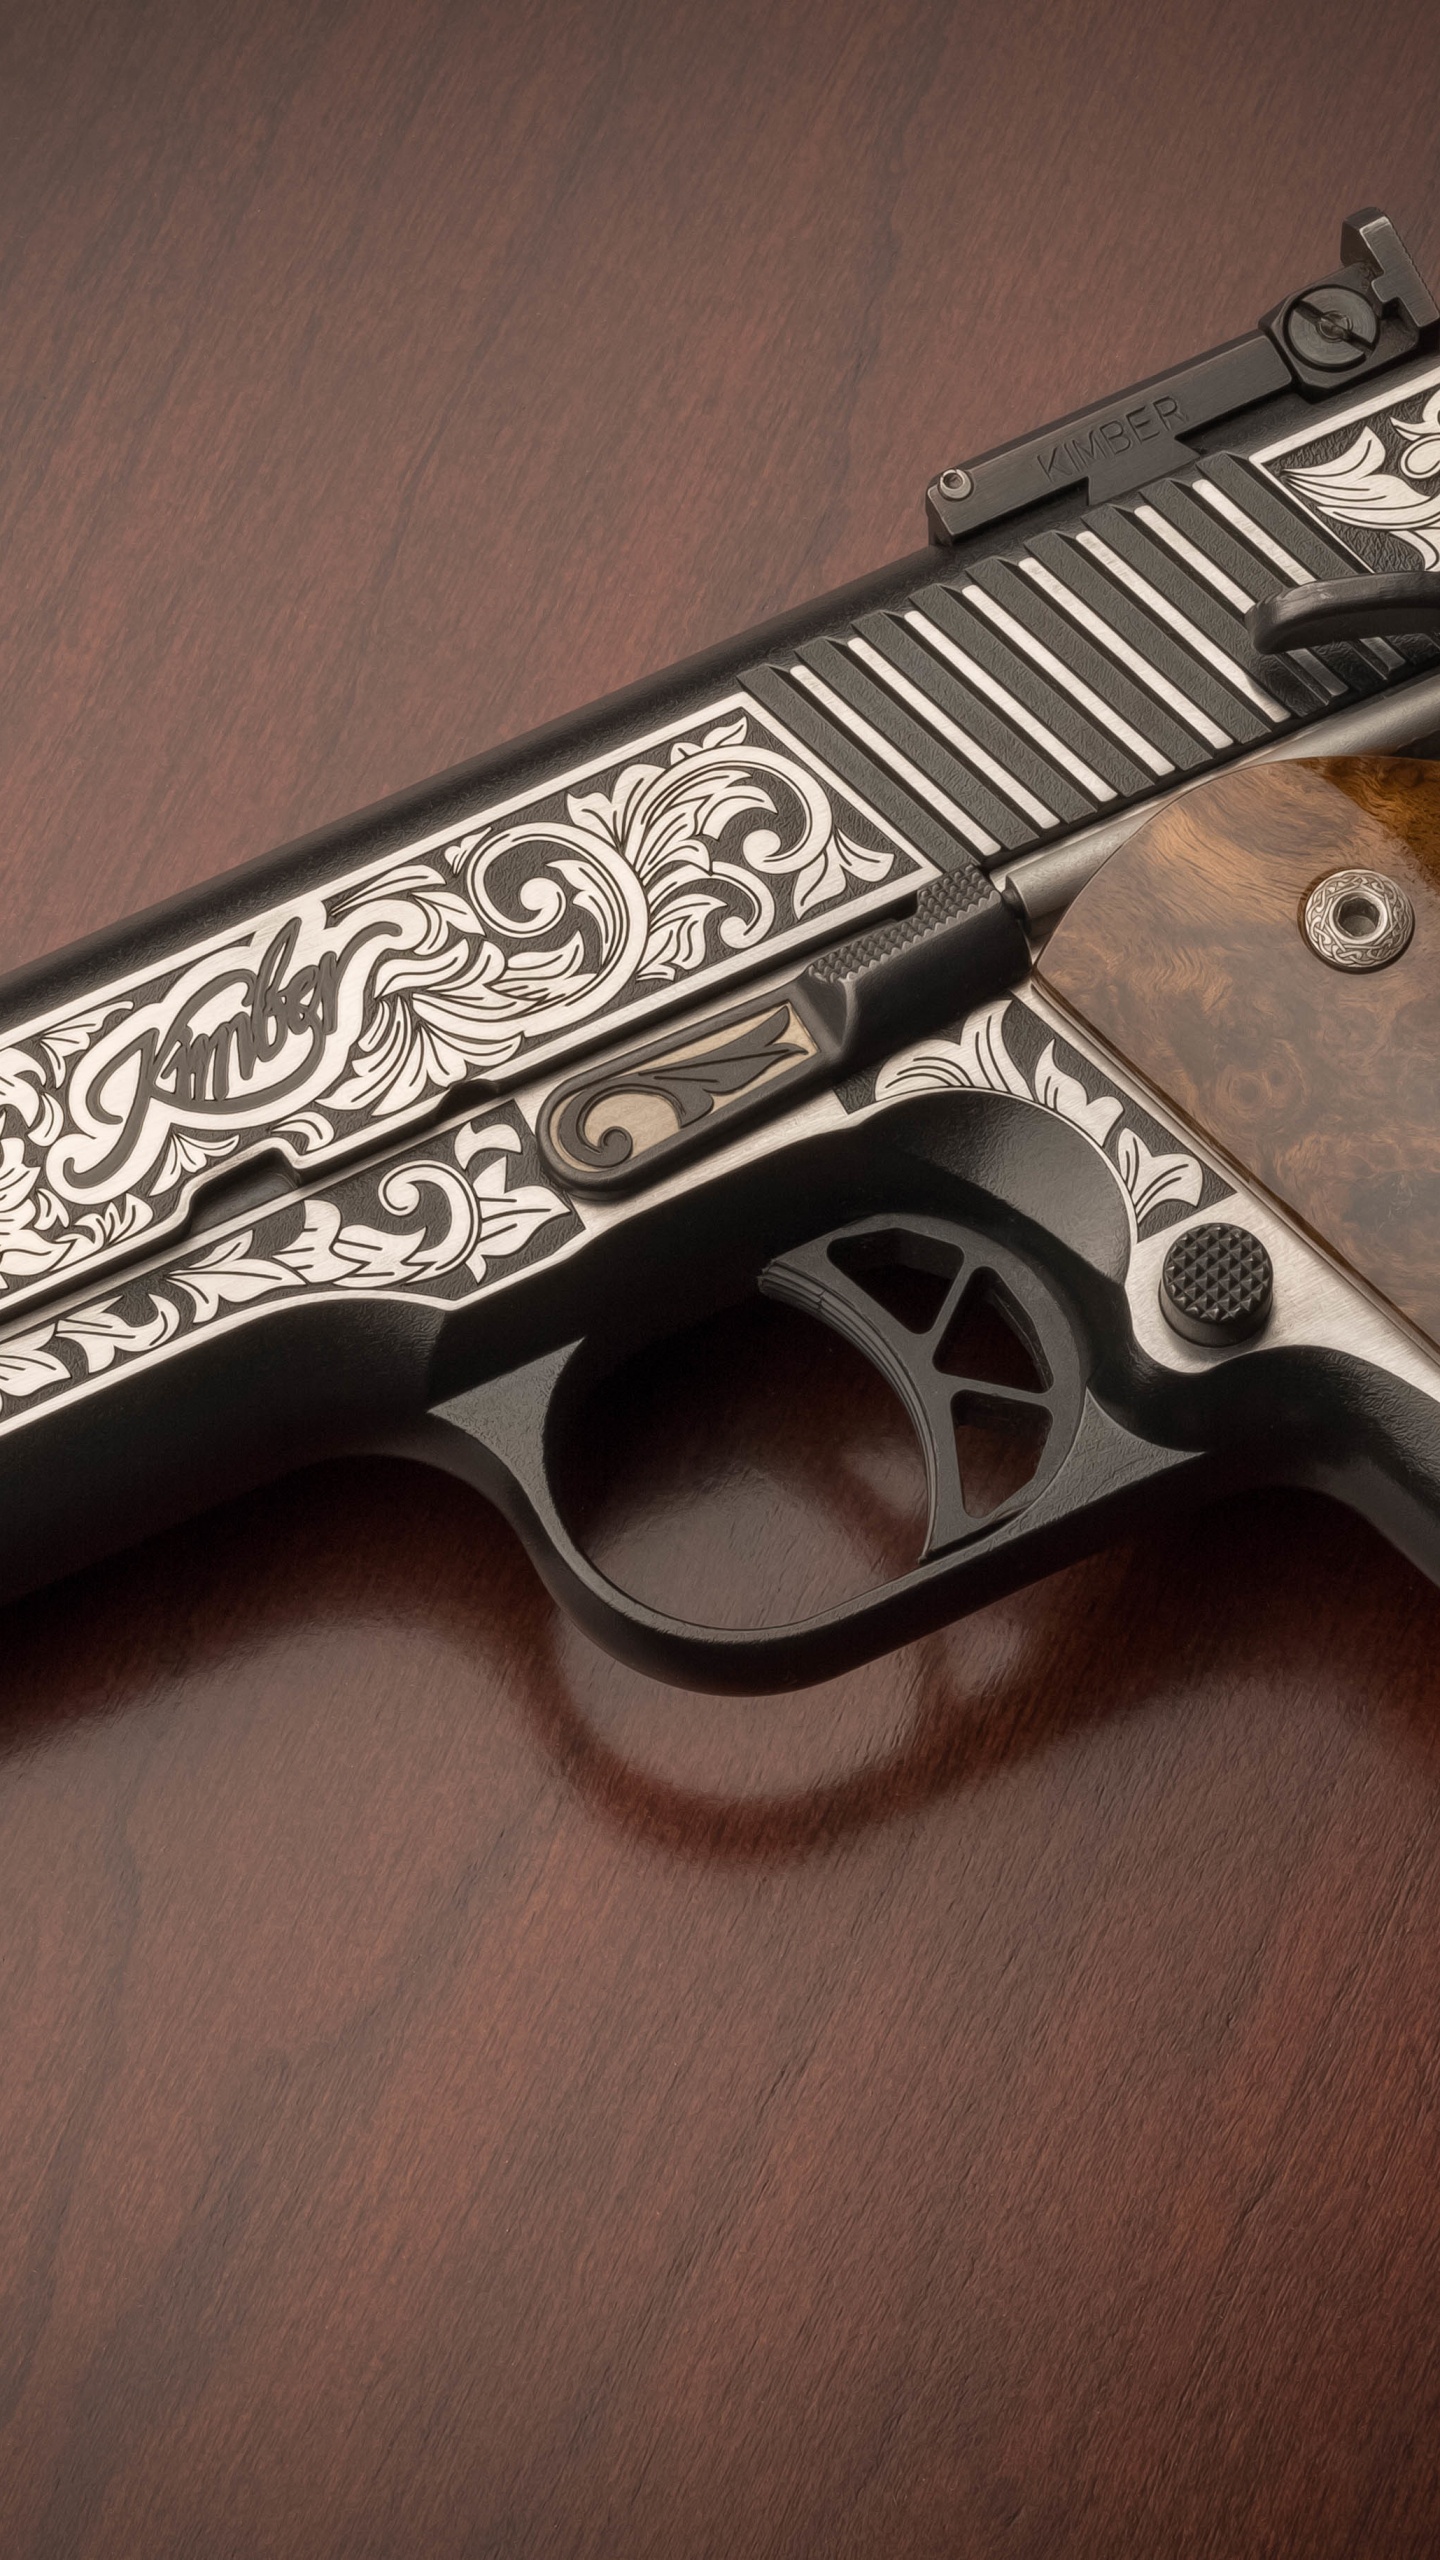 M1911 Pistole, Feuerwaffe, Trigger, Gun Barrel, Pistole Zubehör. Wallpaper in 1440x2560 Resolution